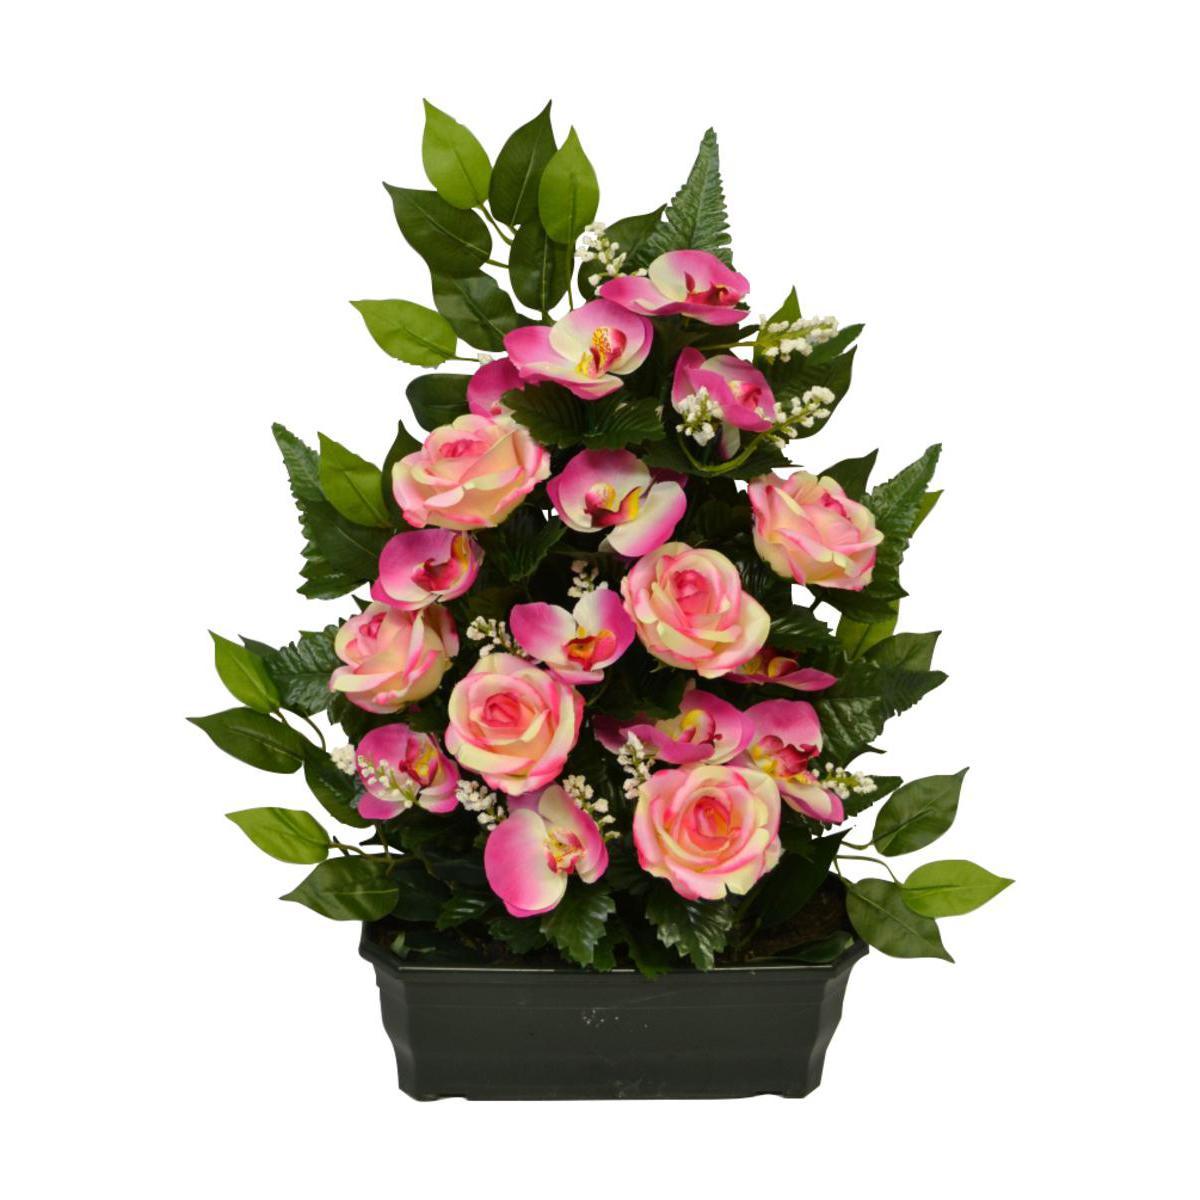 Jardinière de roses, orchidées et gypsophiles - Polyester - H 57 x 30 cm - Différents coloris